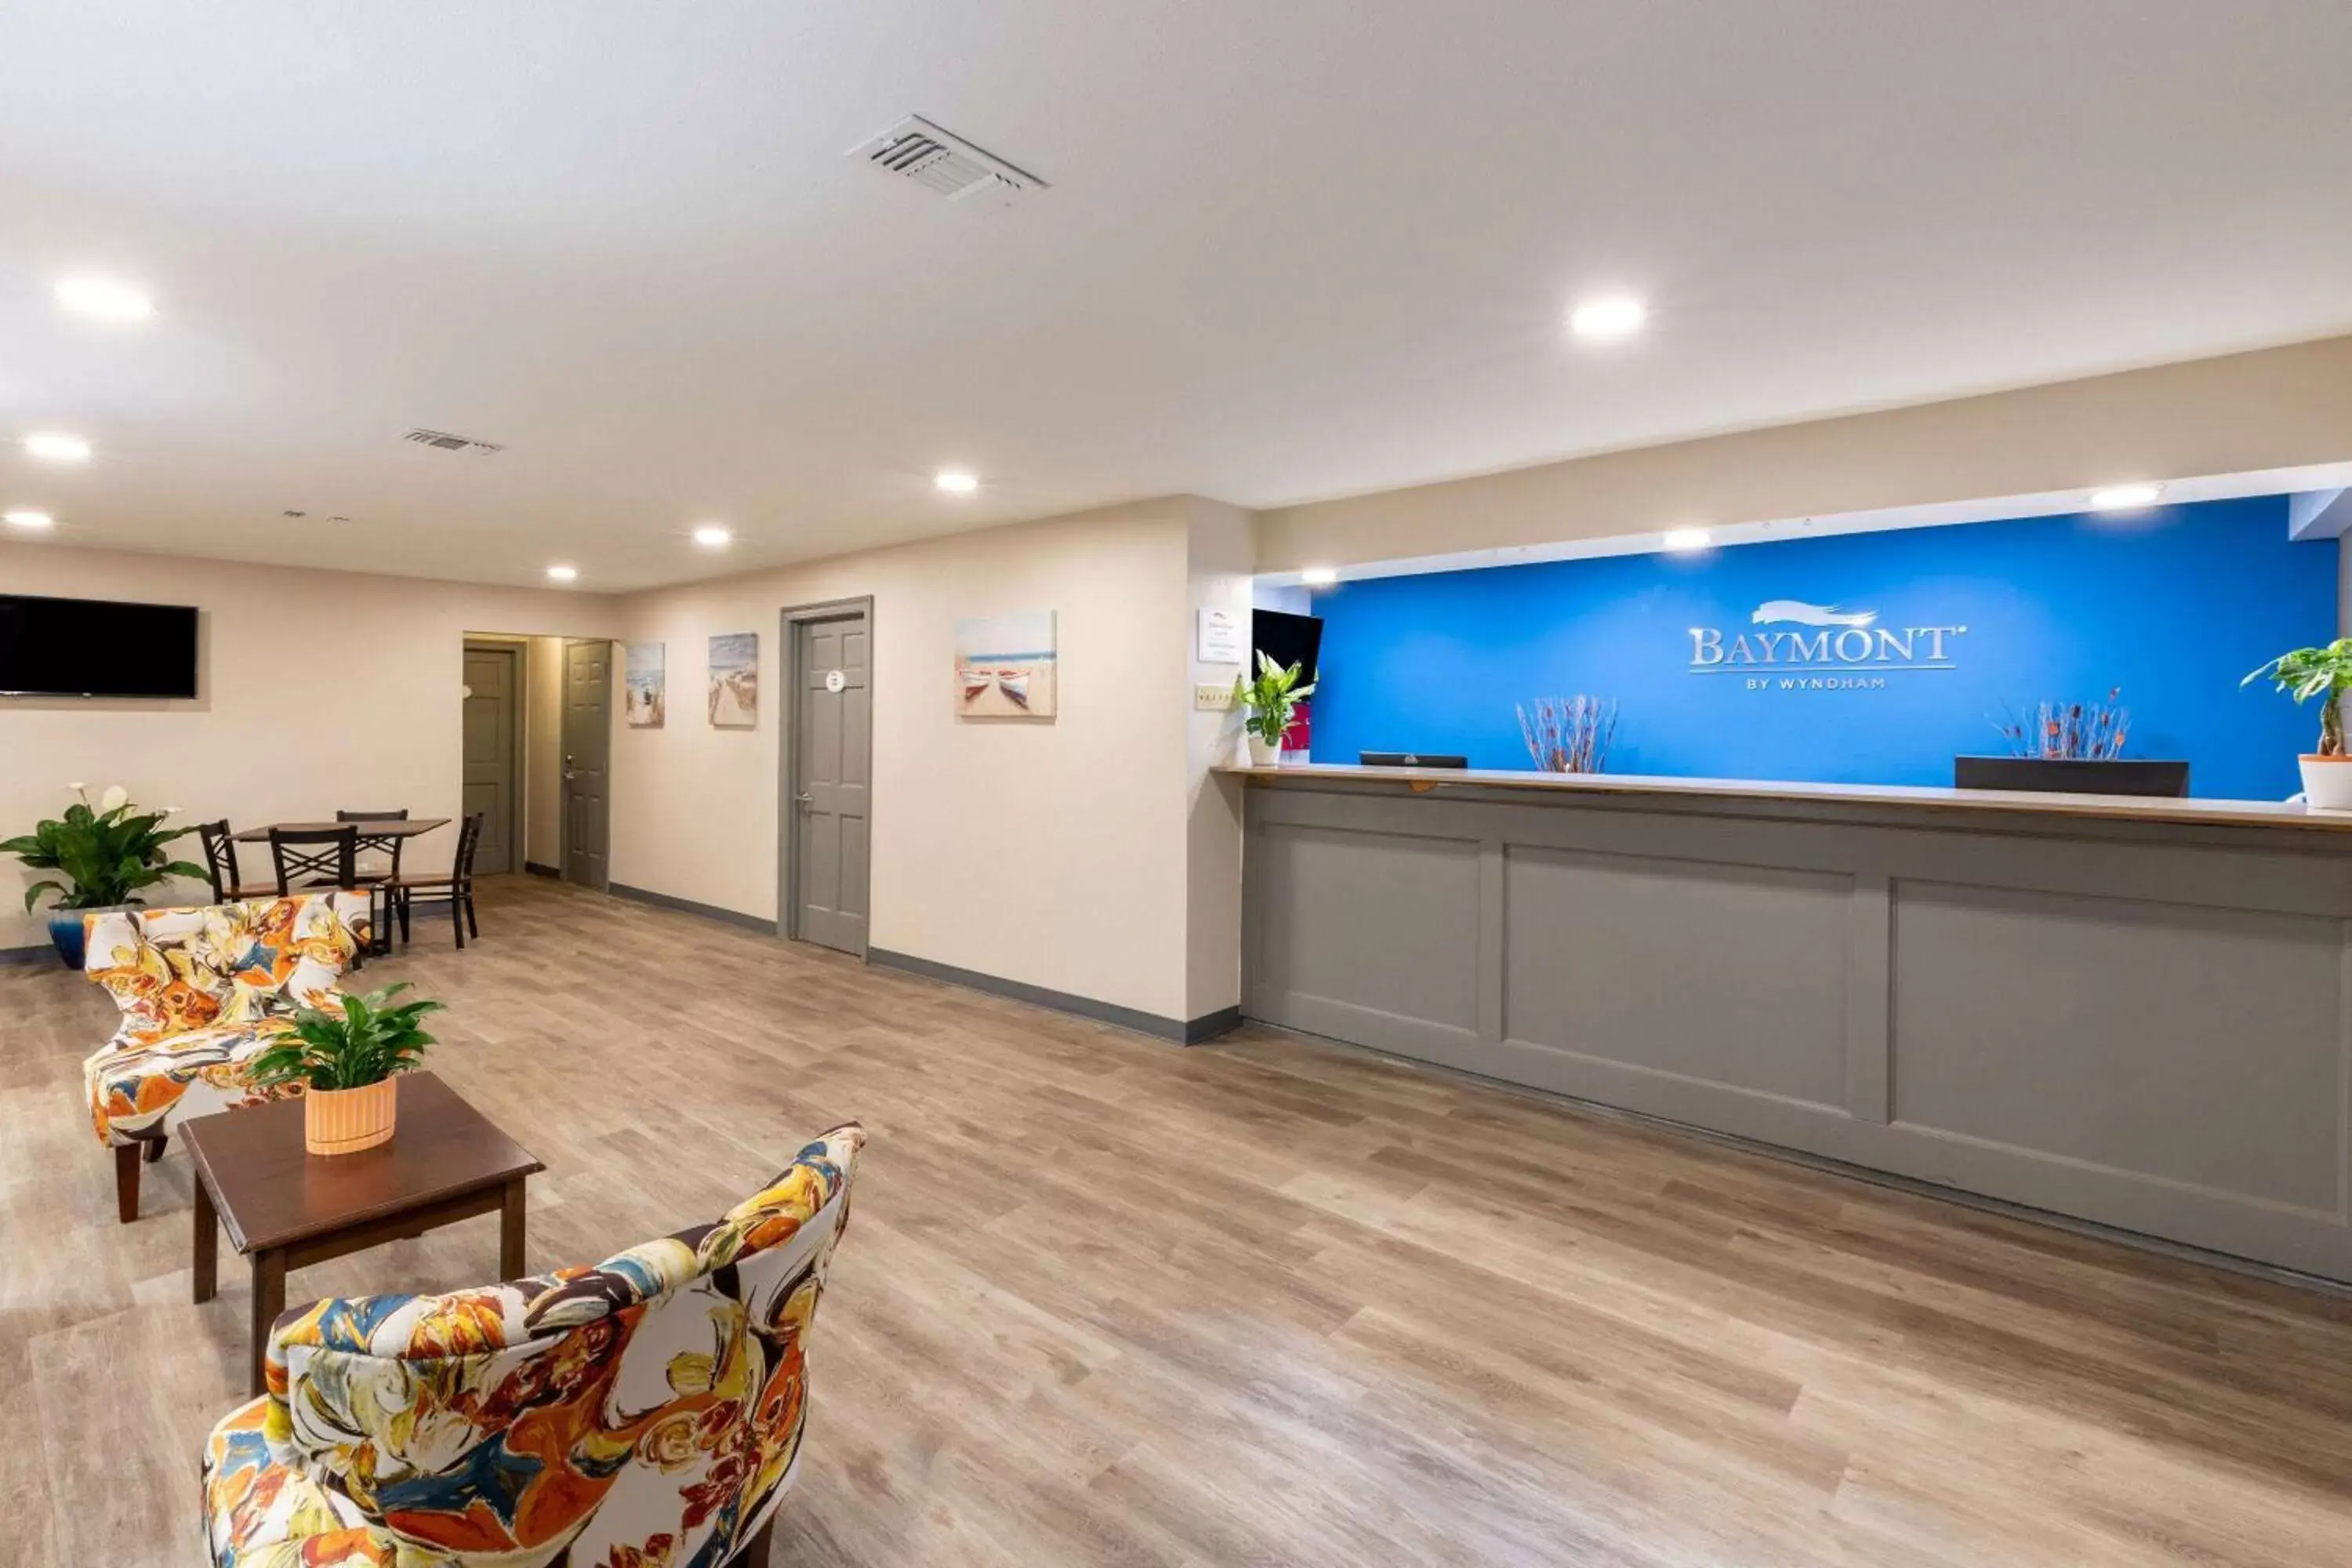 Lobby or reception, Lobby/Reception in Baymont by Wyndham Biloxi - Ocean Springs